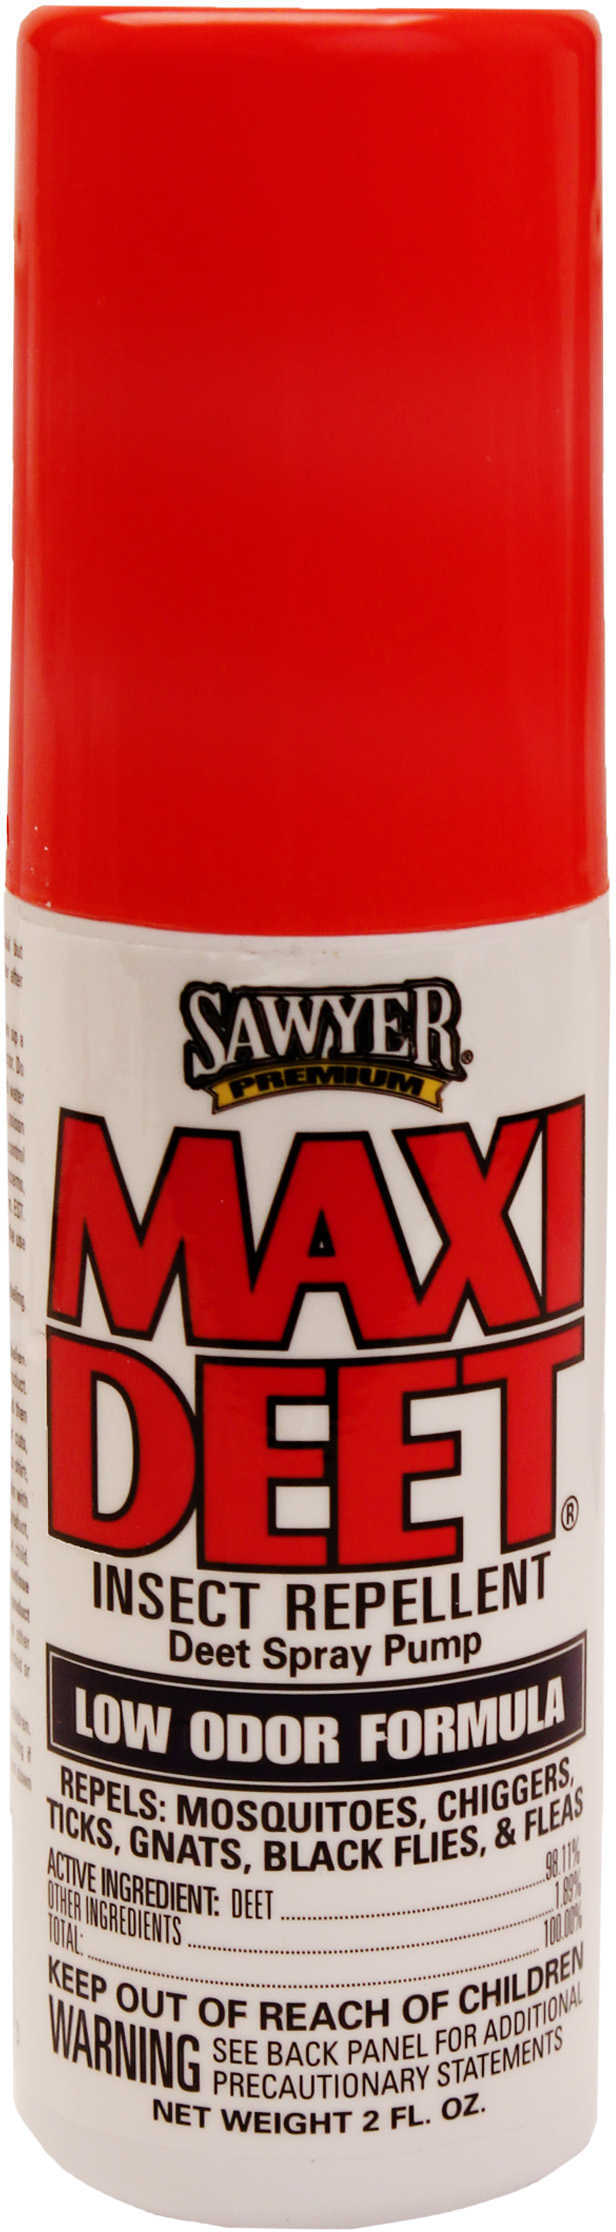 Sawyer Maxi-DEET Insect Repellent 2 oz. Model: SP719